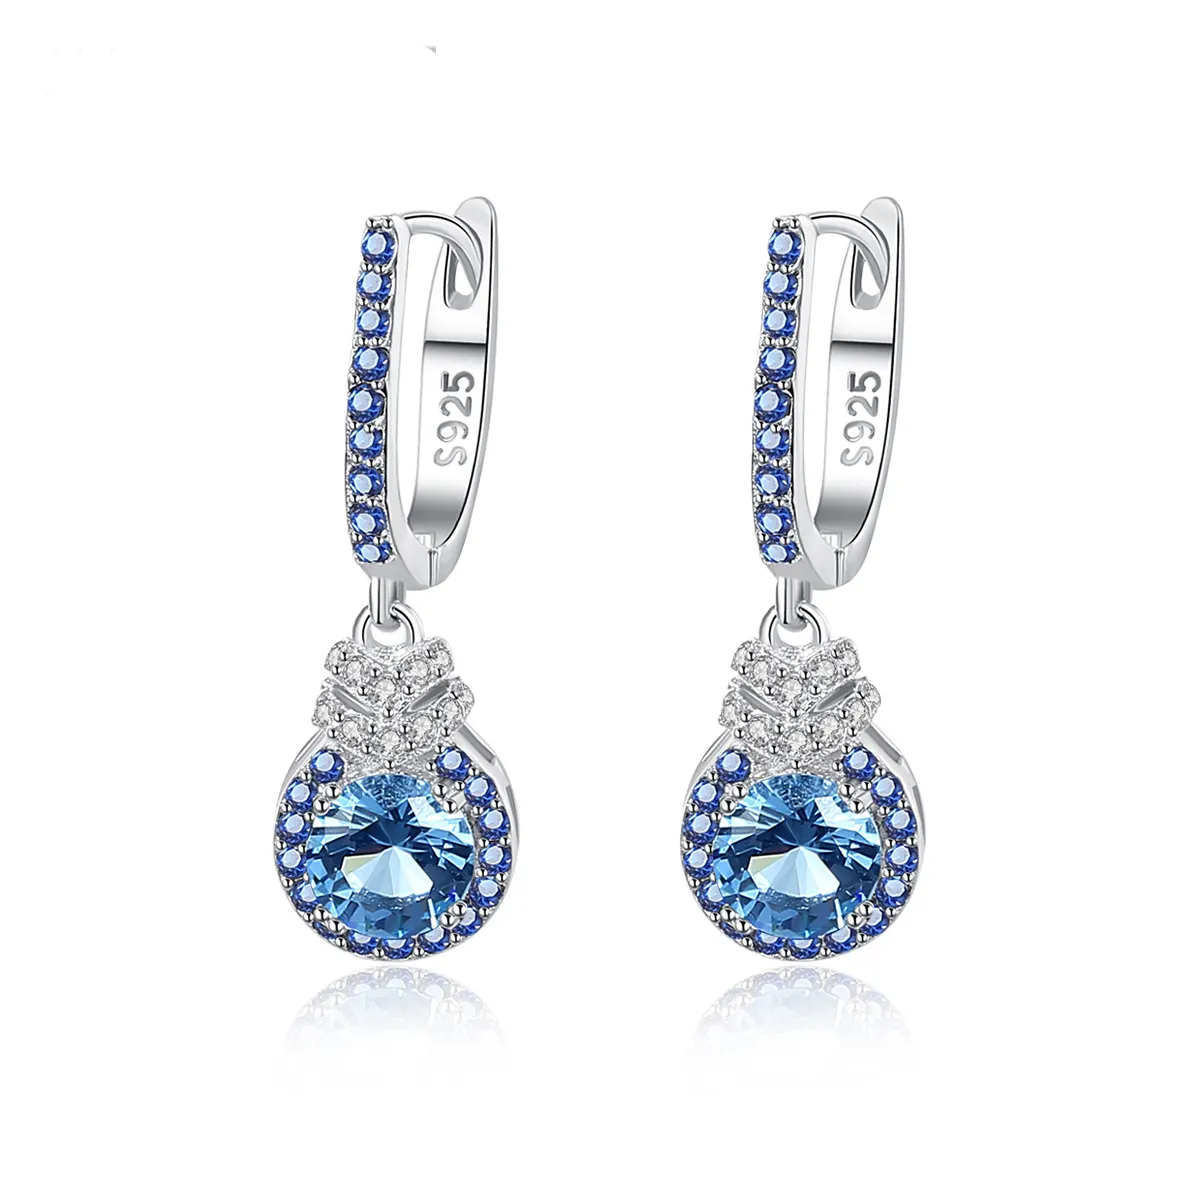 Brincos de prata S925 com tesouro colorido para mulheres, conjunto de joias com micro requintado de safira azul celeste